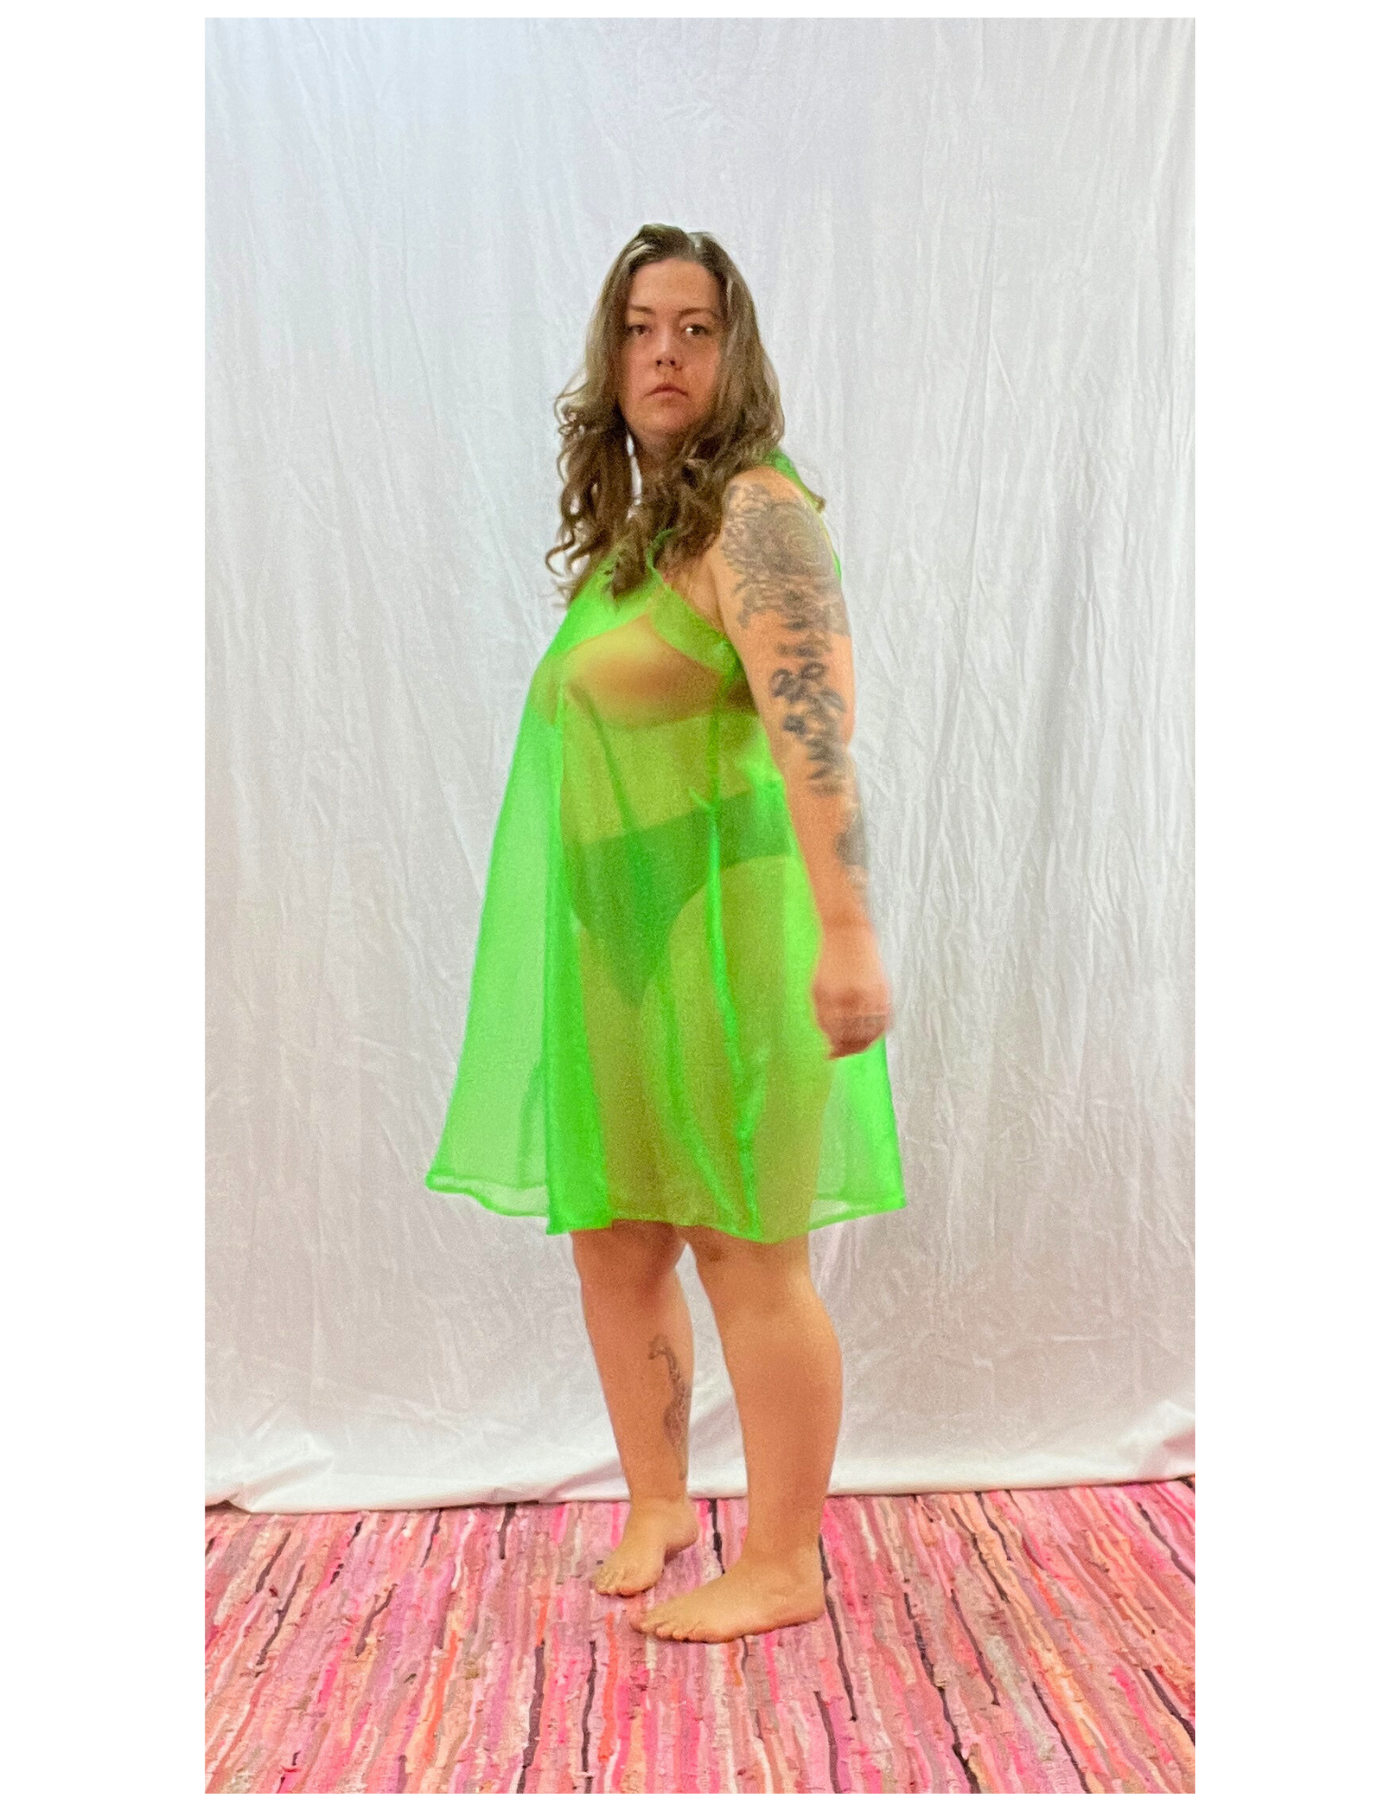 Sheer green dress - XL/1X